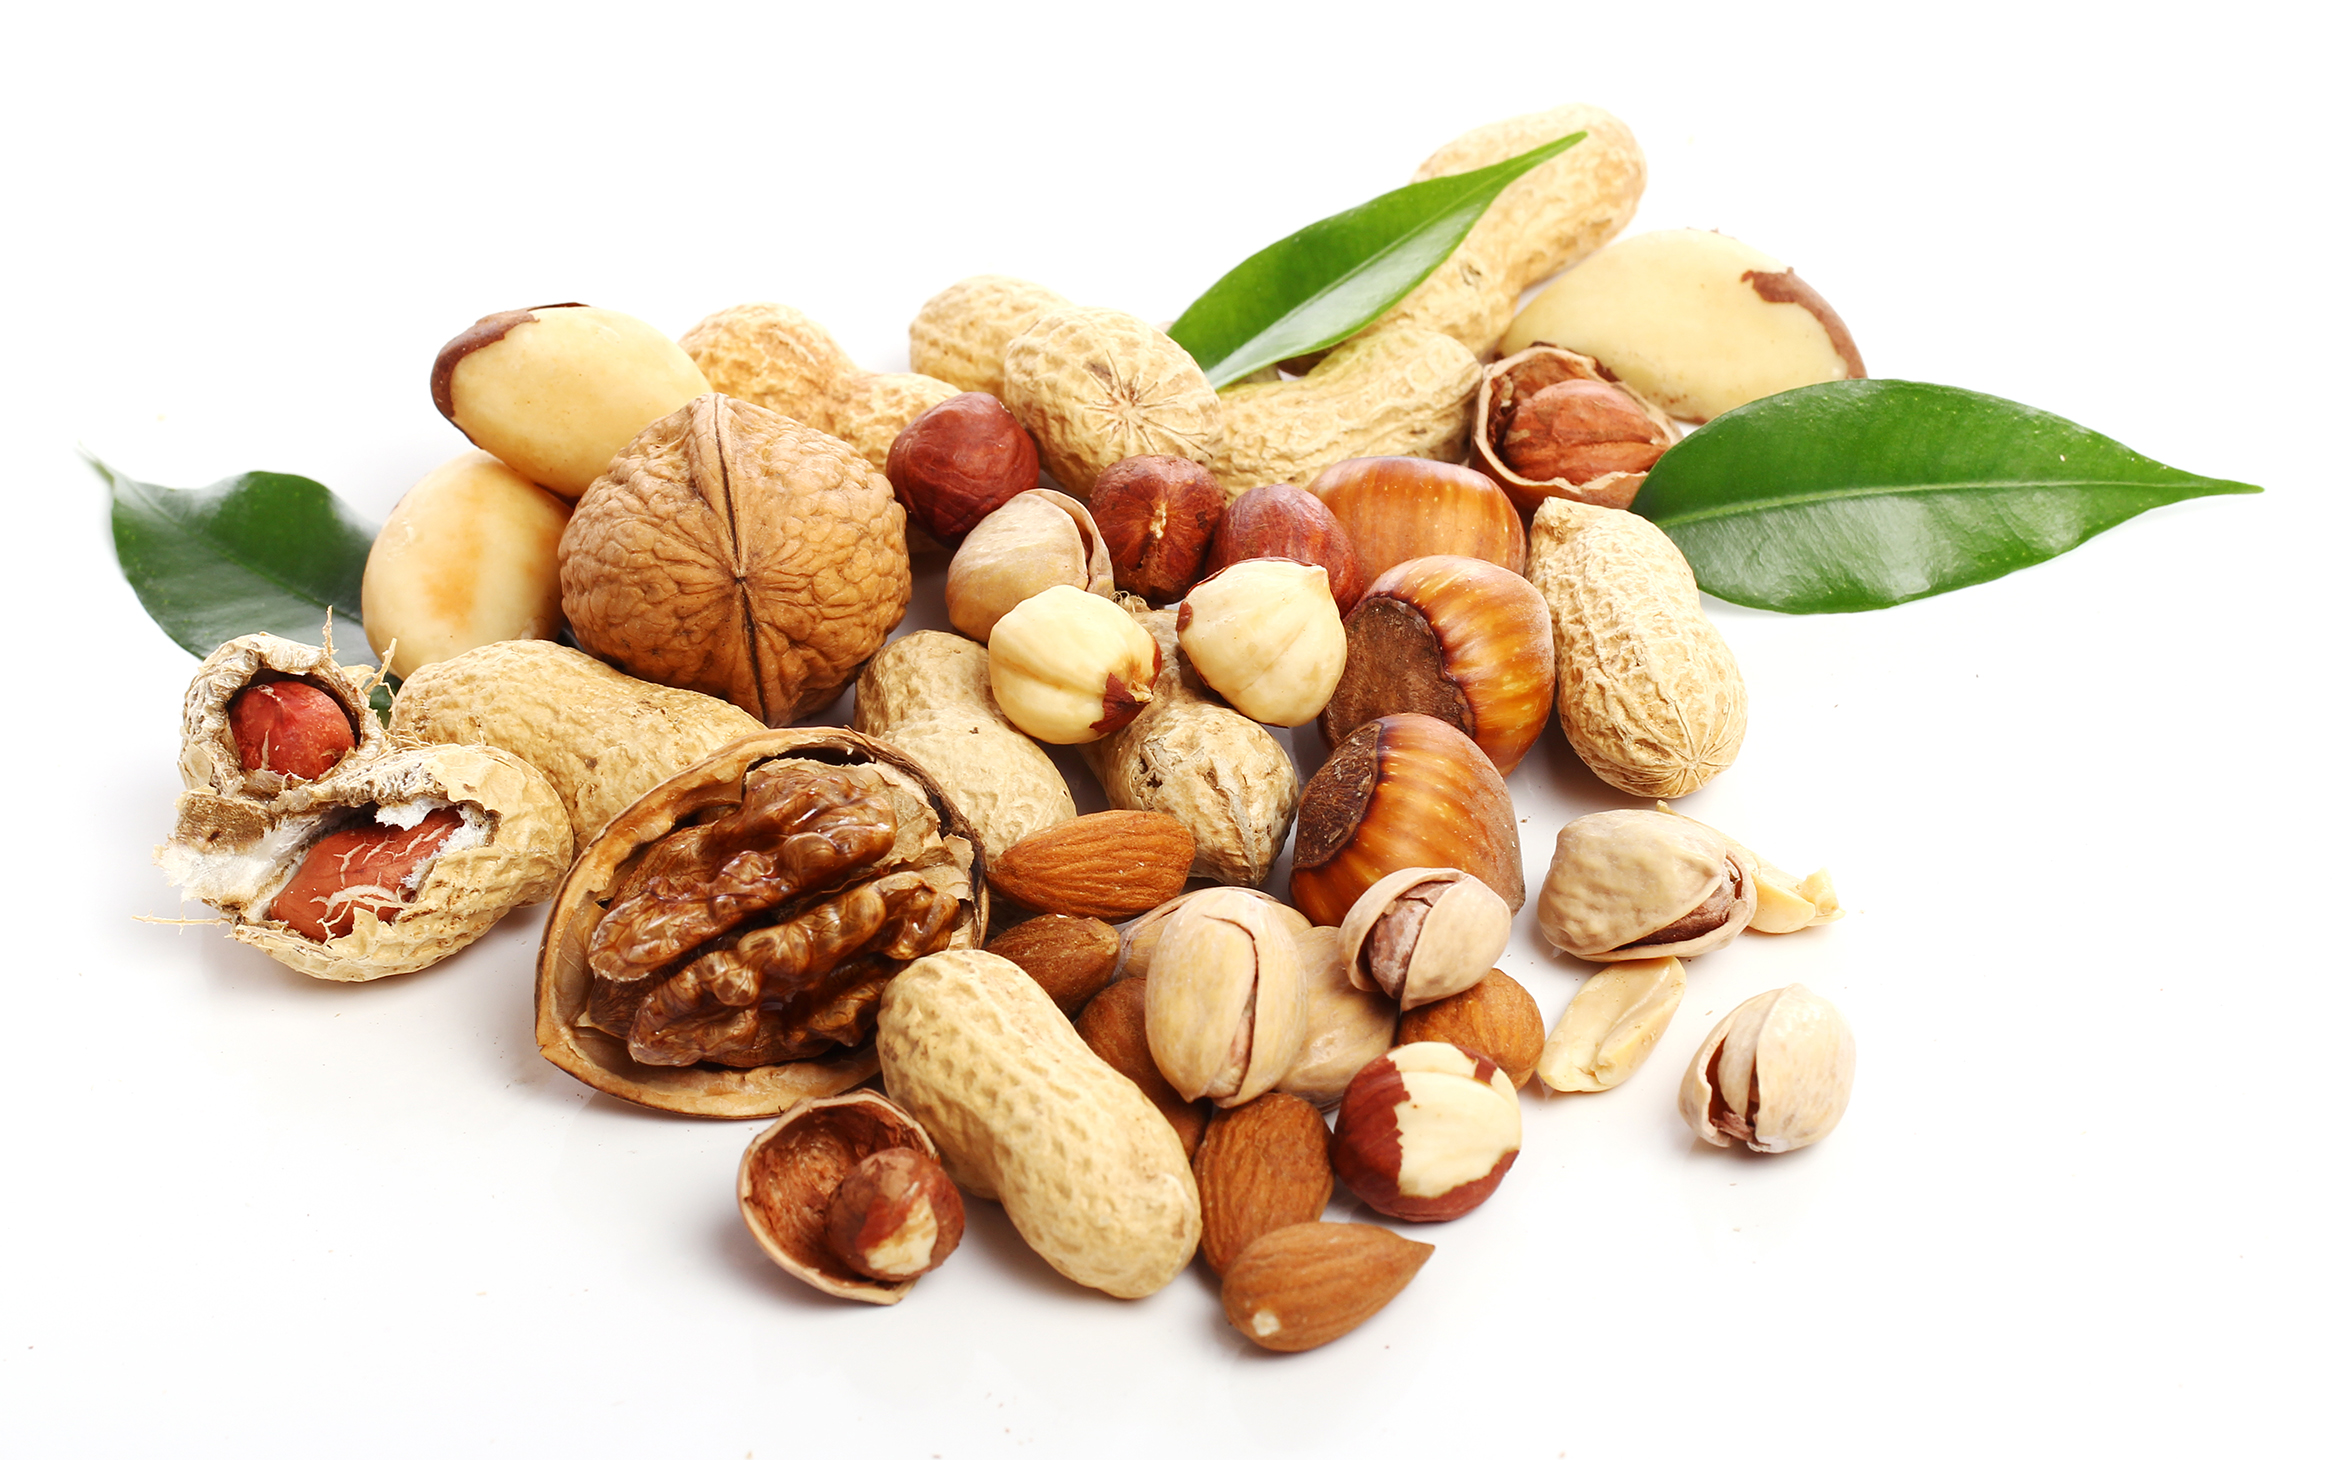 nuts-walnut-peanuts-almond-seeds.jpg